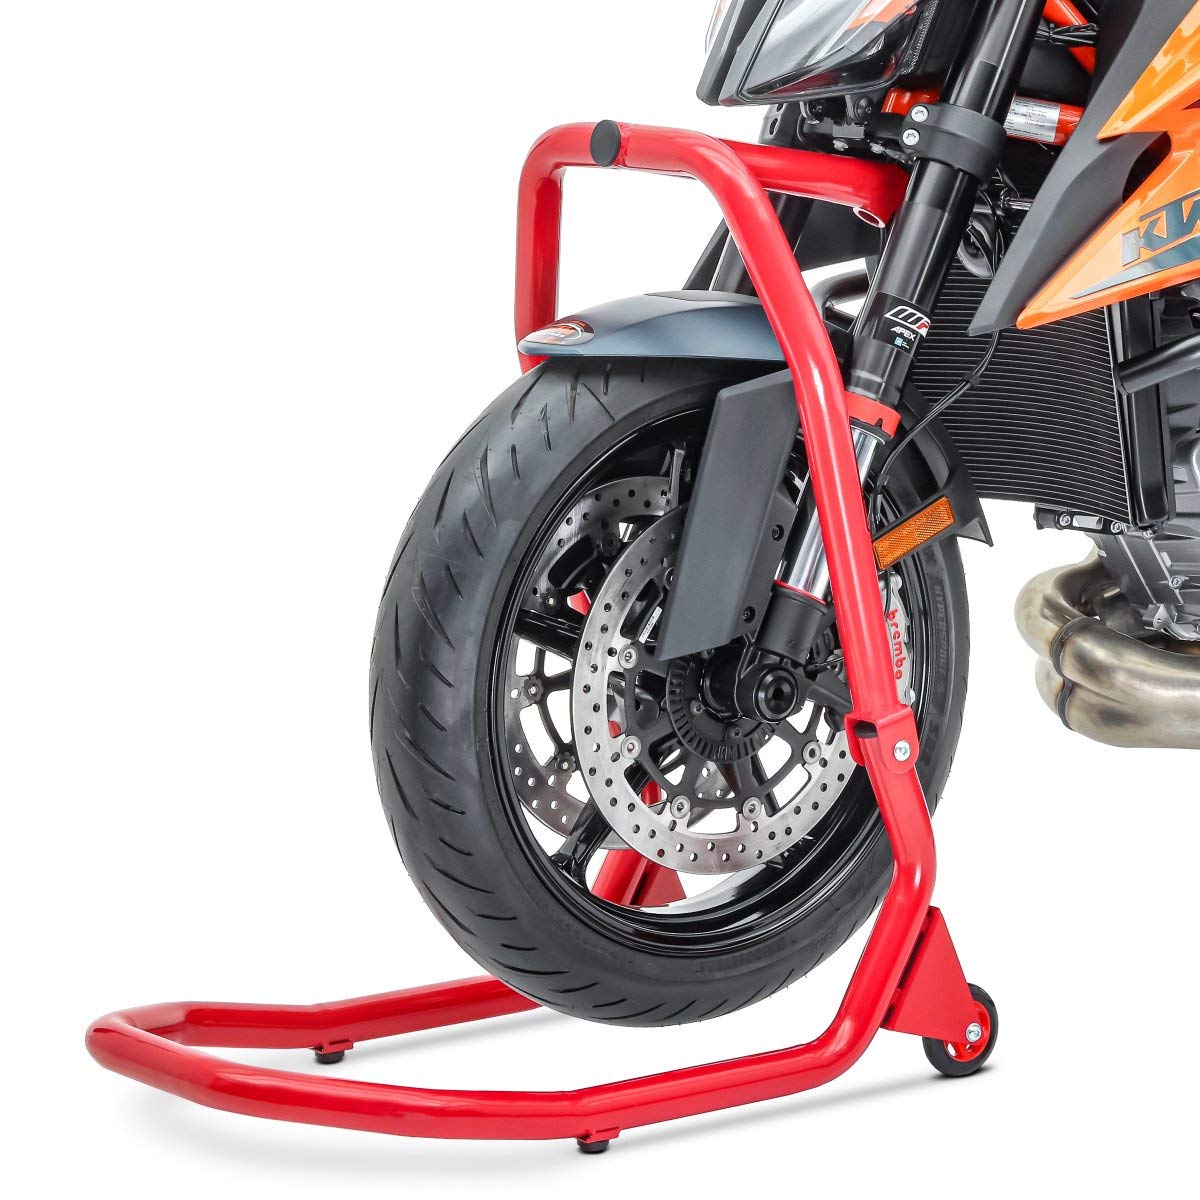 Lenkkopfständer Vorderrad V4 für Ducati Monster 1100 Evo 11-13 rot von ConStands